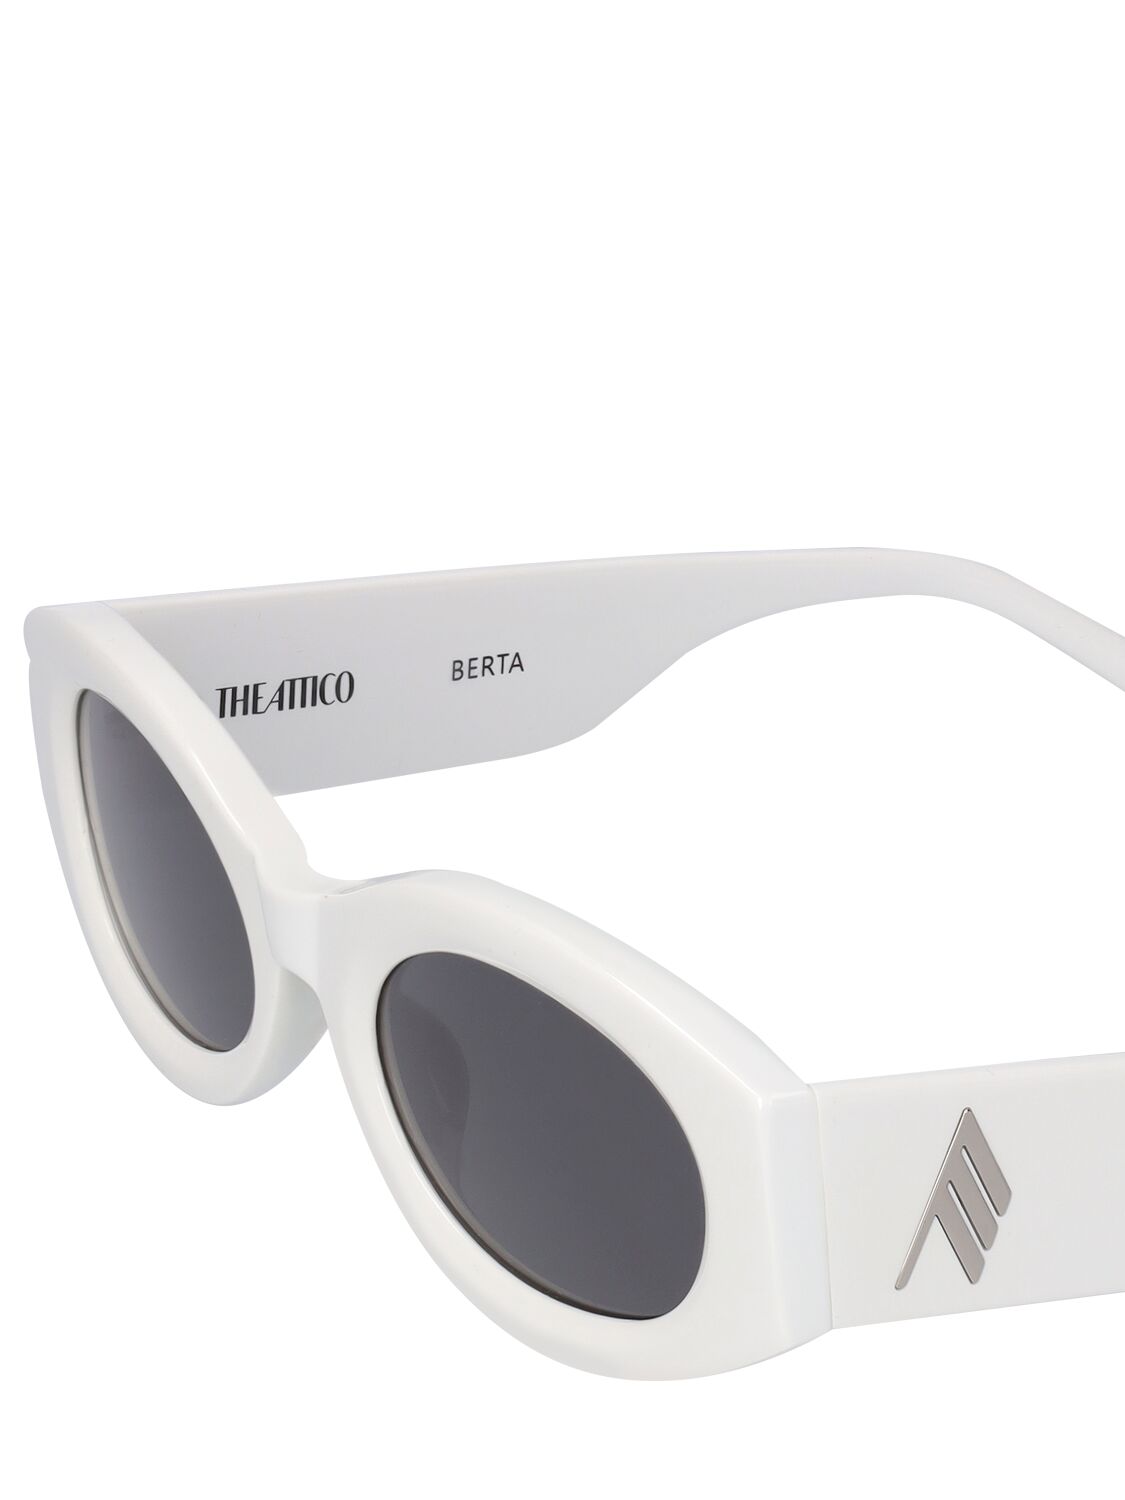 Shop Attico Berta Oval Acetate Sunglasses In White,grey